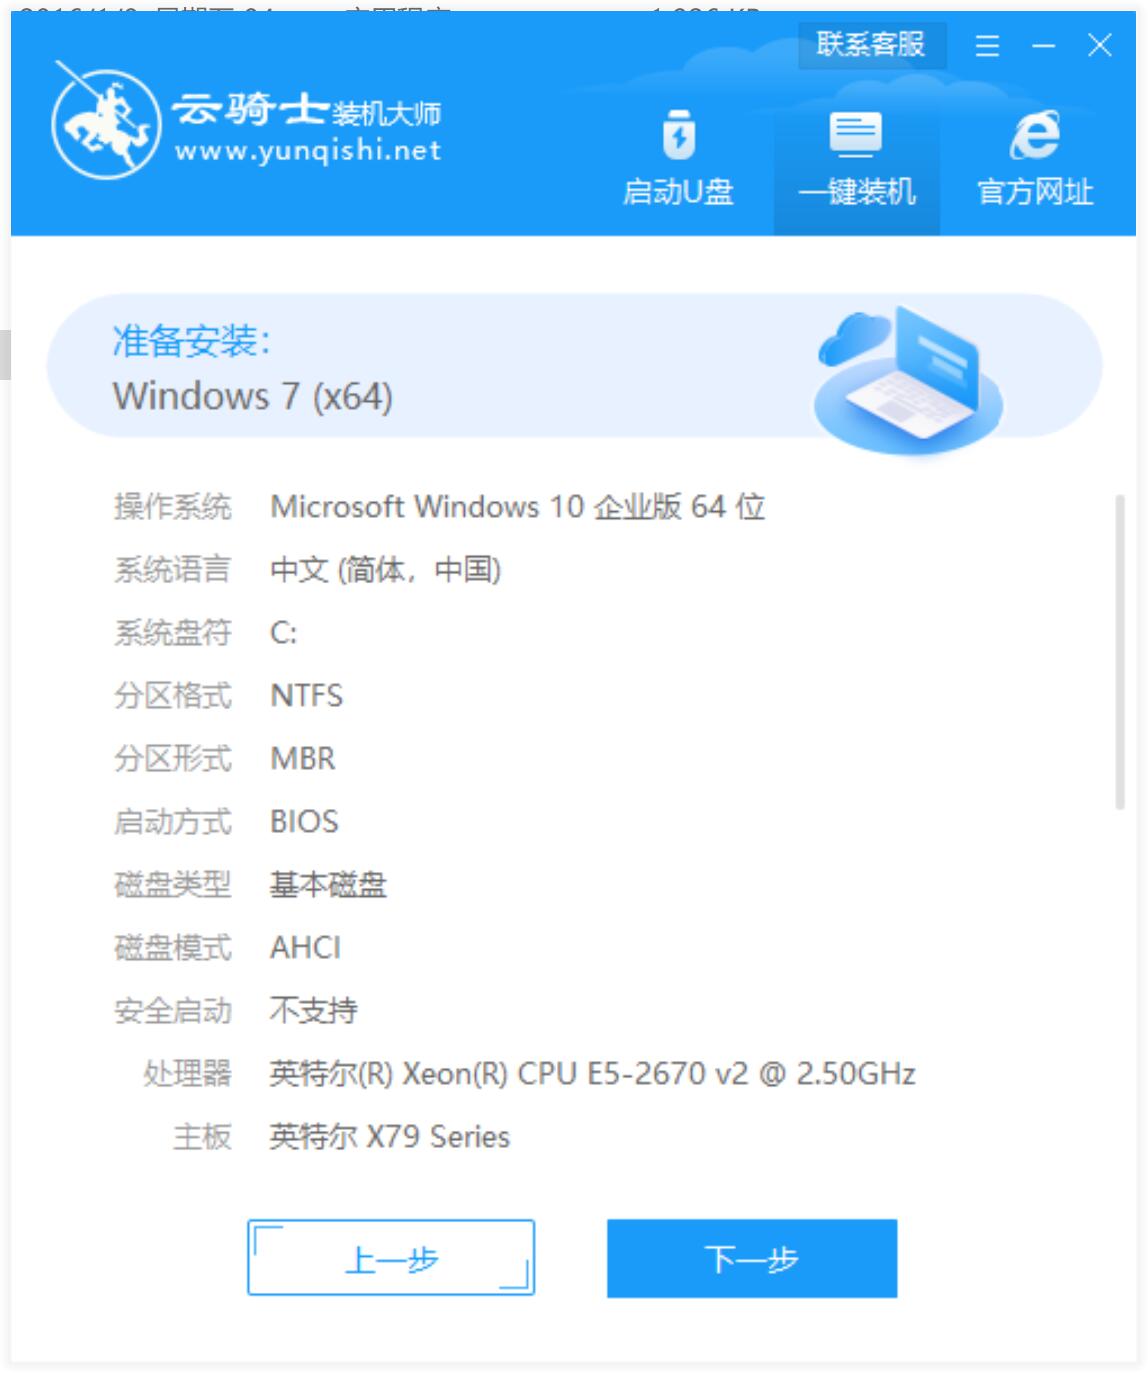 新版苹果笔记本专用系统 GHOST win7 X64位  纯净中文旗舰版系统下载 V2021.07(6)